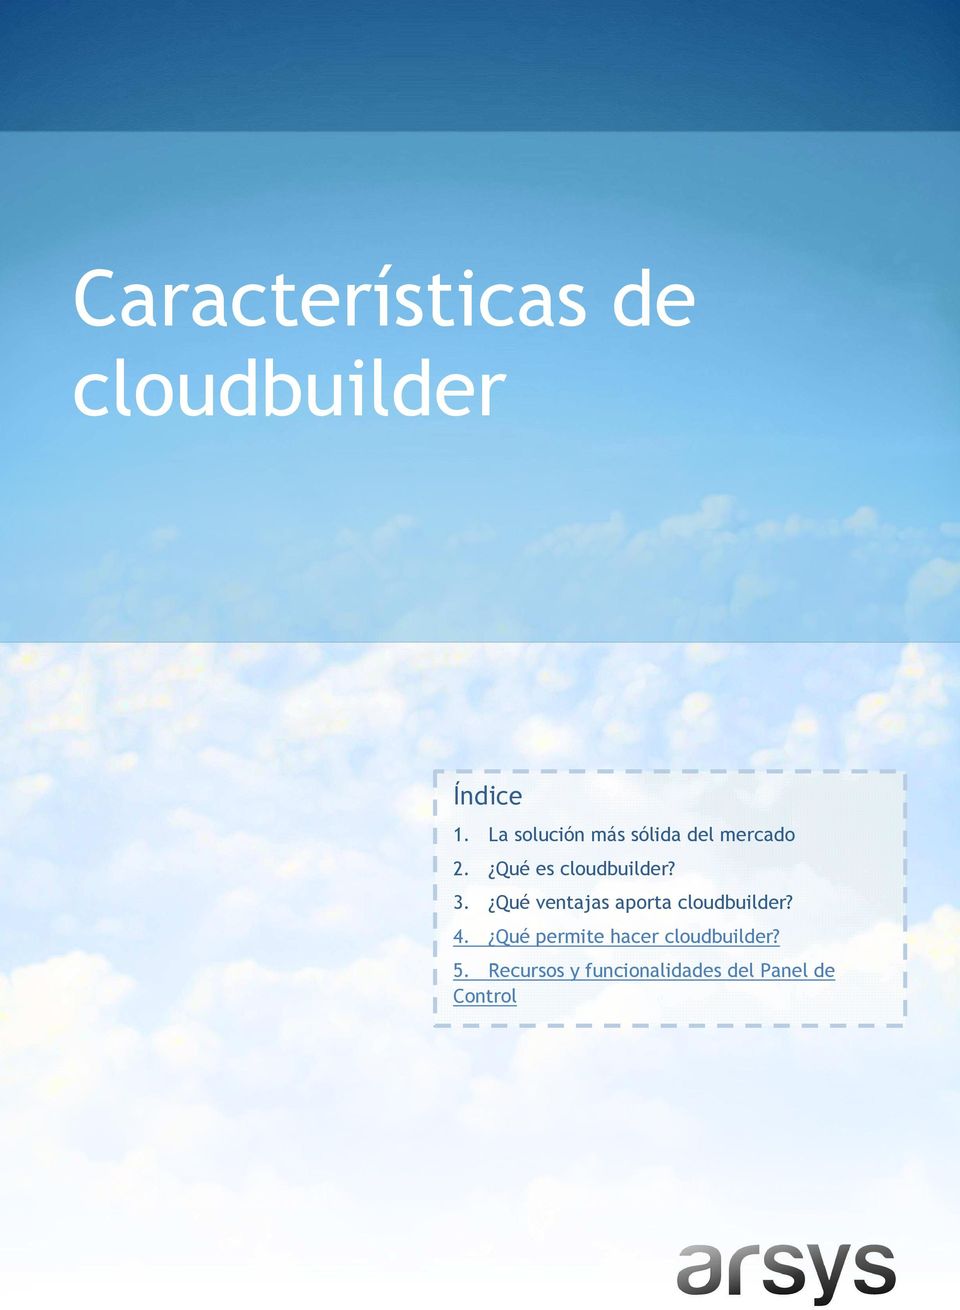 Qué ventajas aporta cloudbuilder? 4.